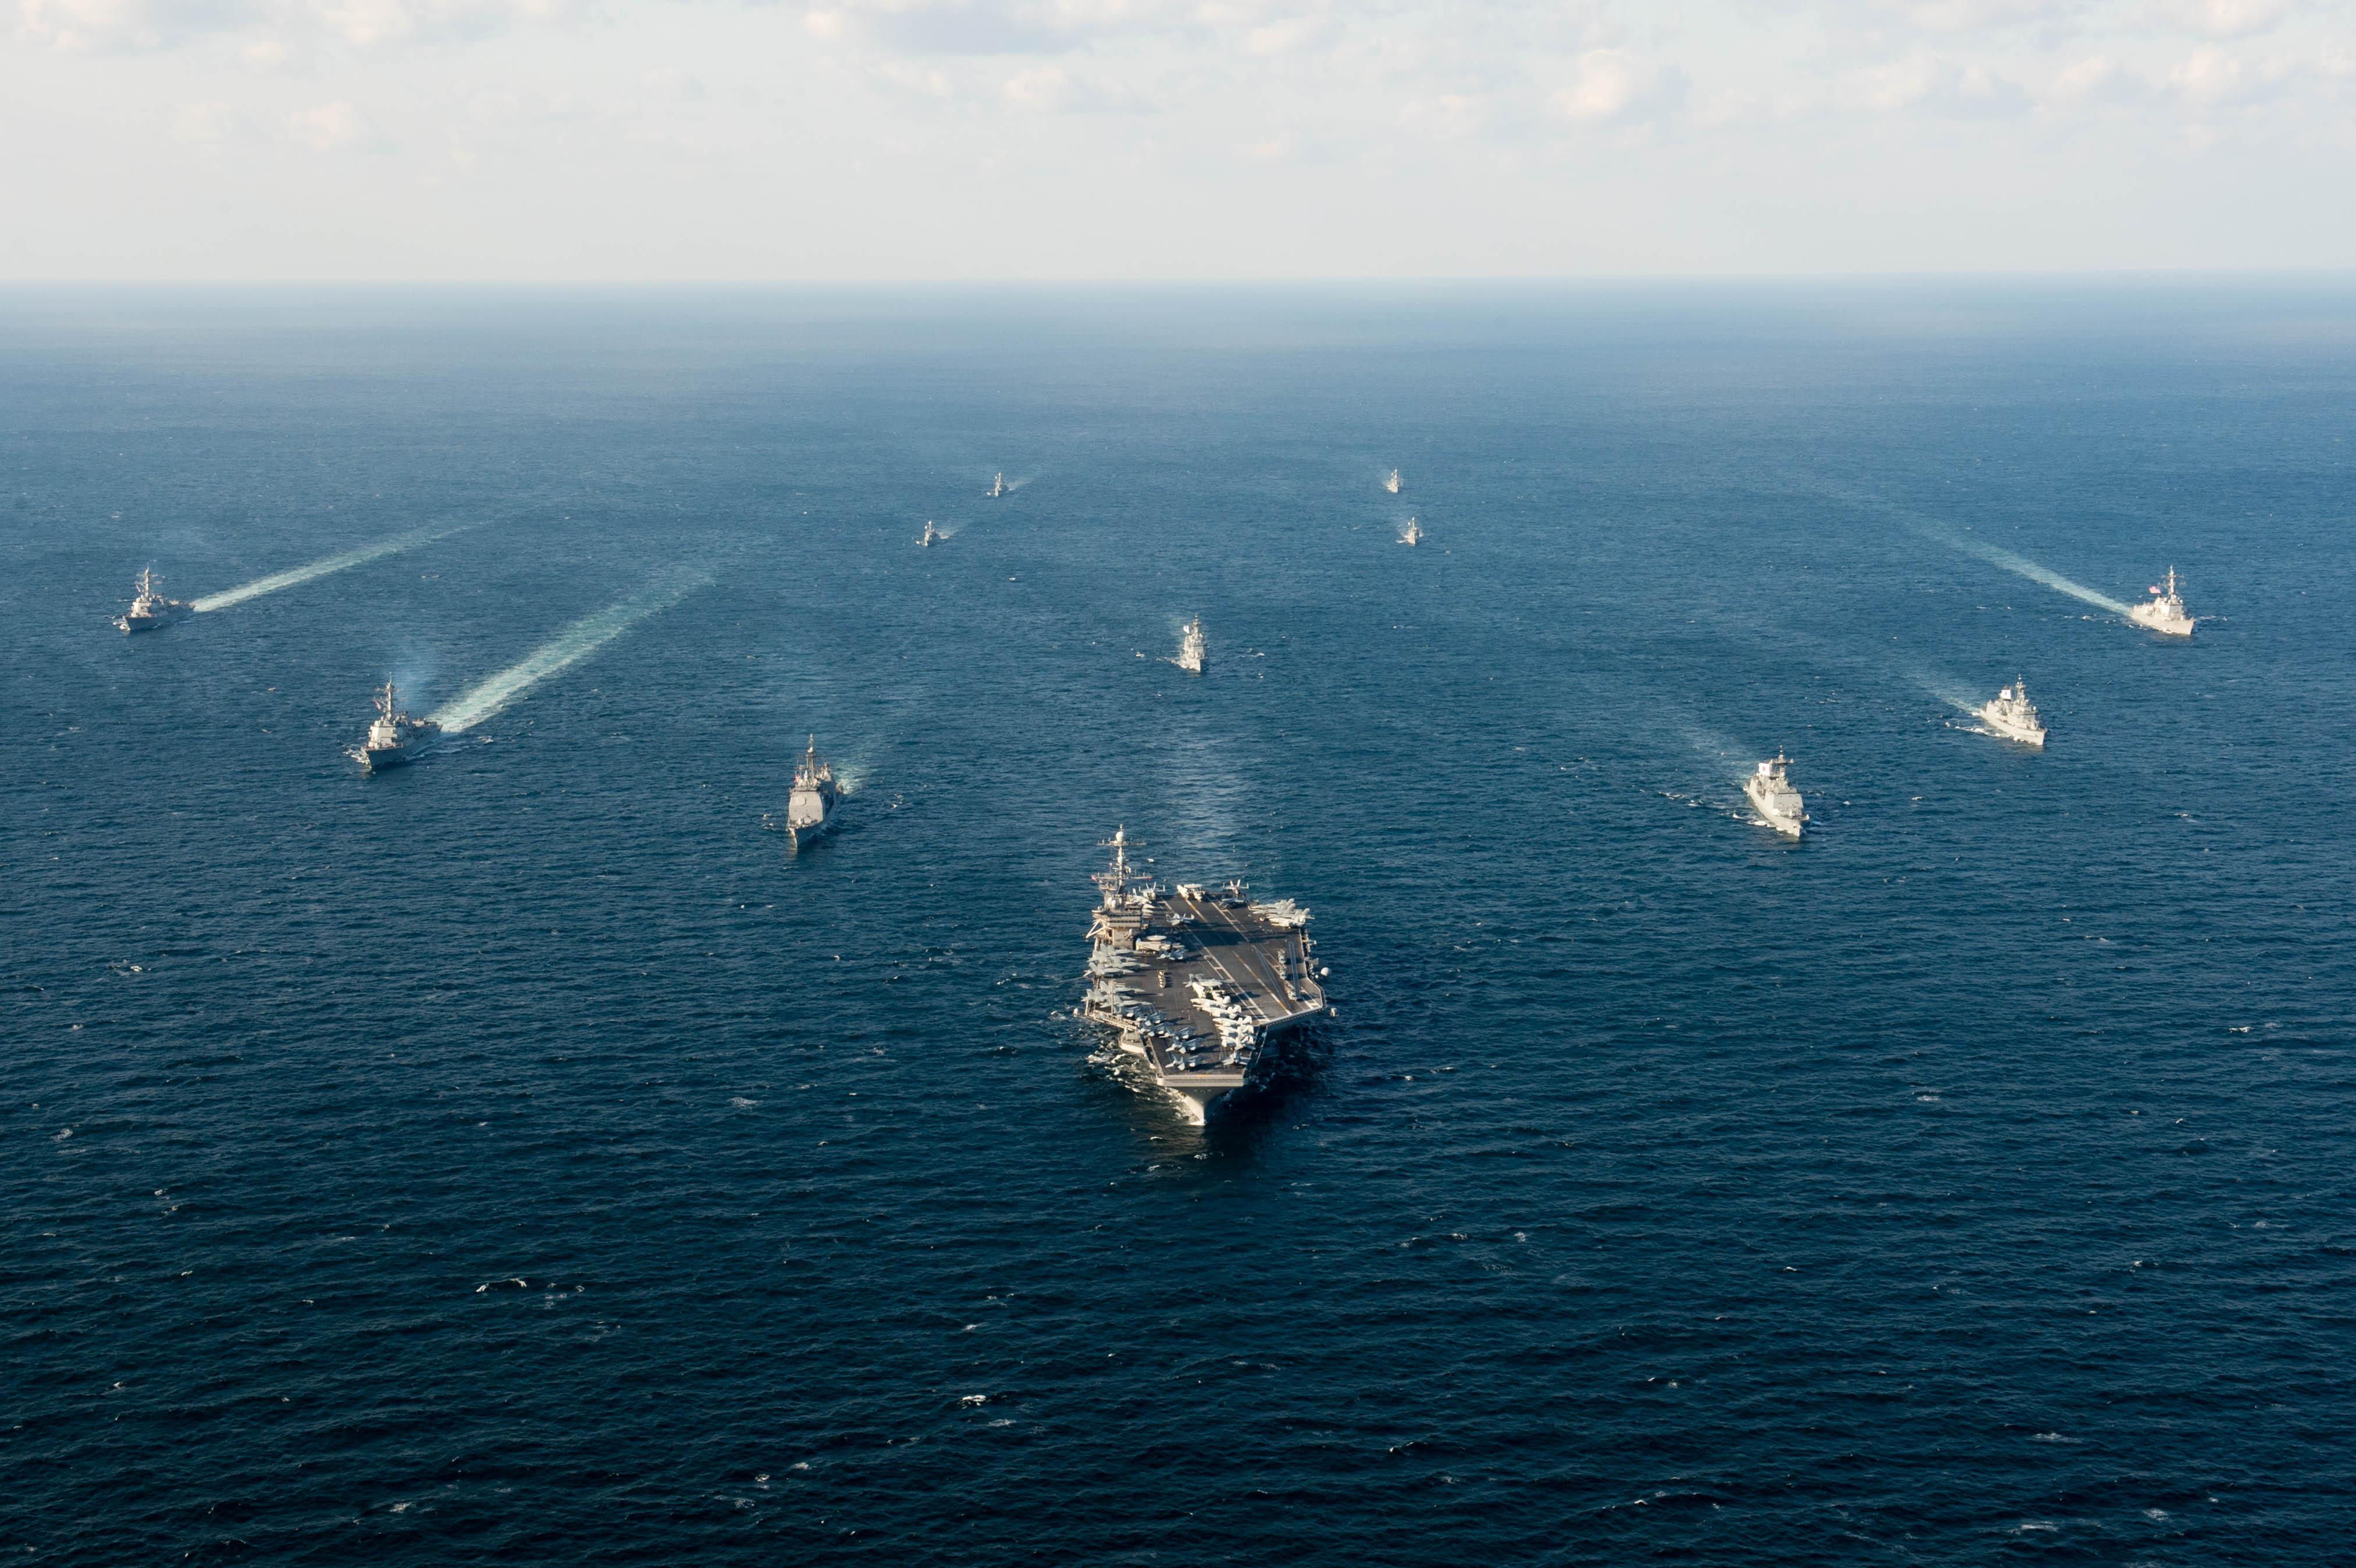 毋庸置疑,美国海军的航母编队构成及运用也是世界上最先进的